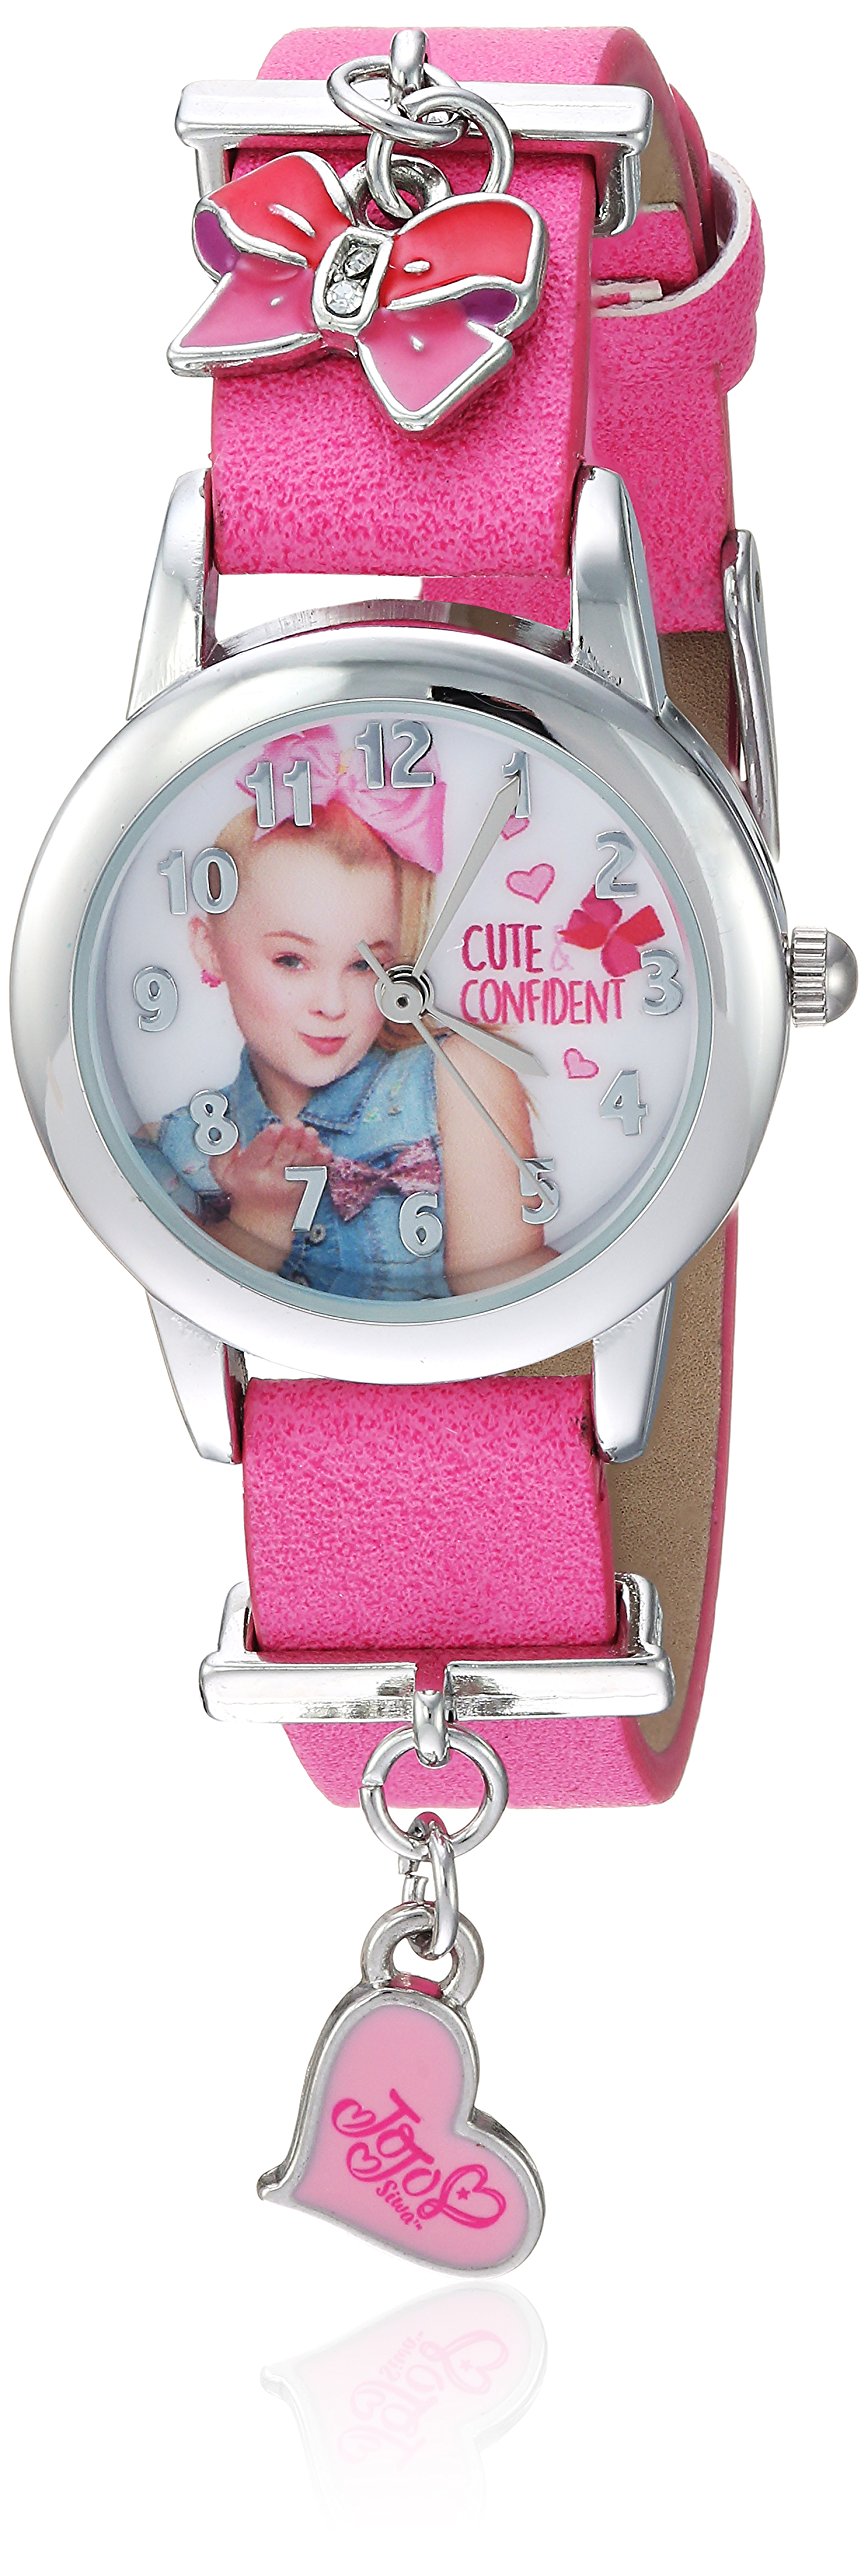 Accutime JoJo Siwa Girls' Analog-Quartz Watch with Leather-Synthetic Strap, Pink, 12 (Model: JOJ5002)